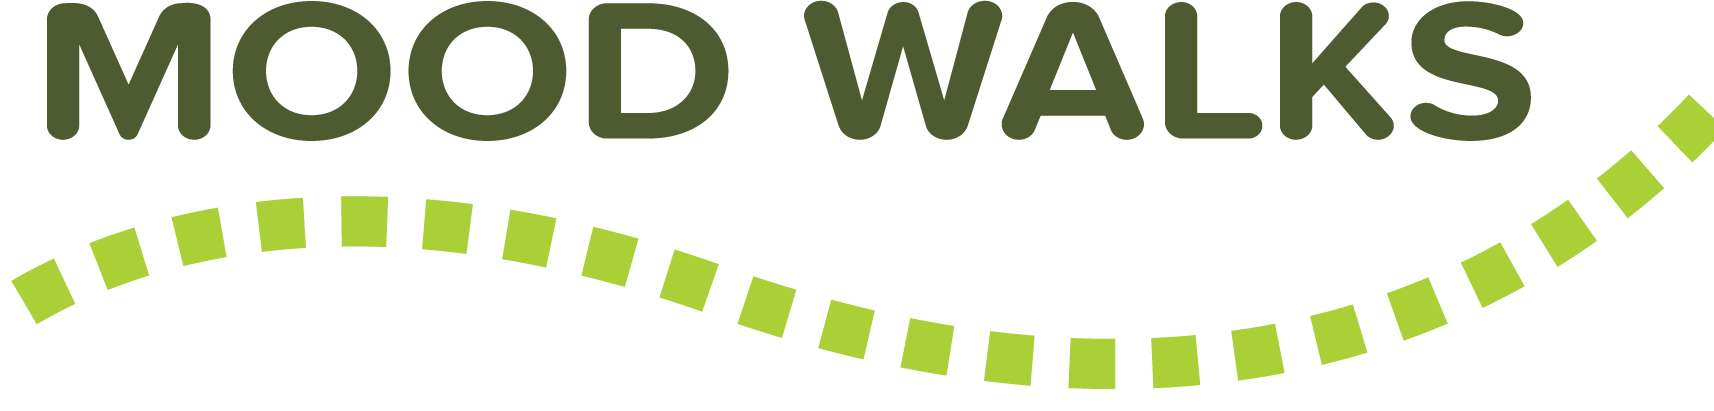 MoodWalks_Logo_Green_ENG.png